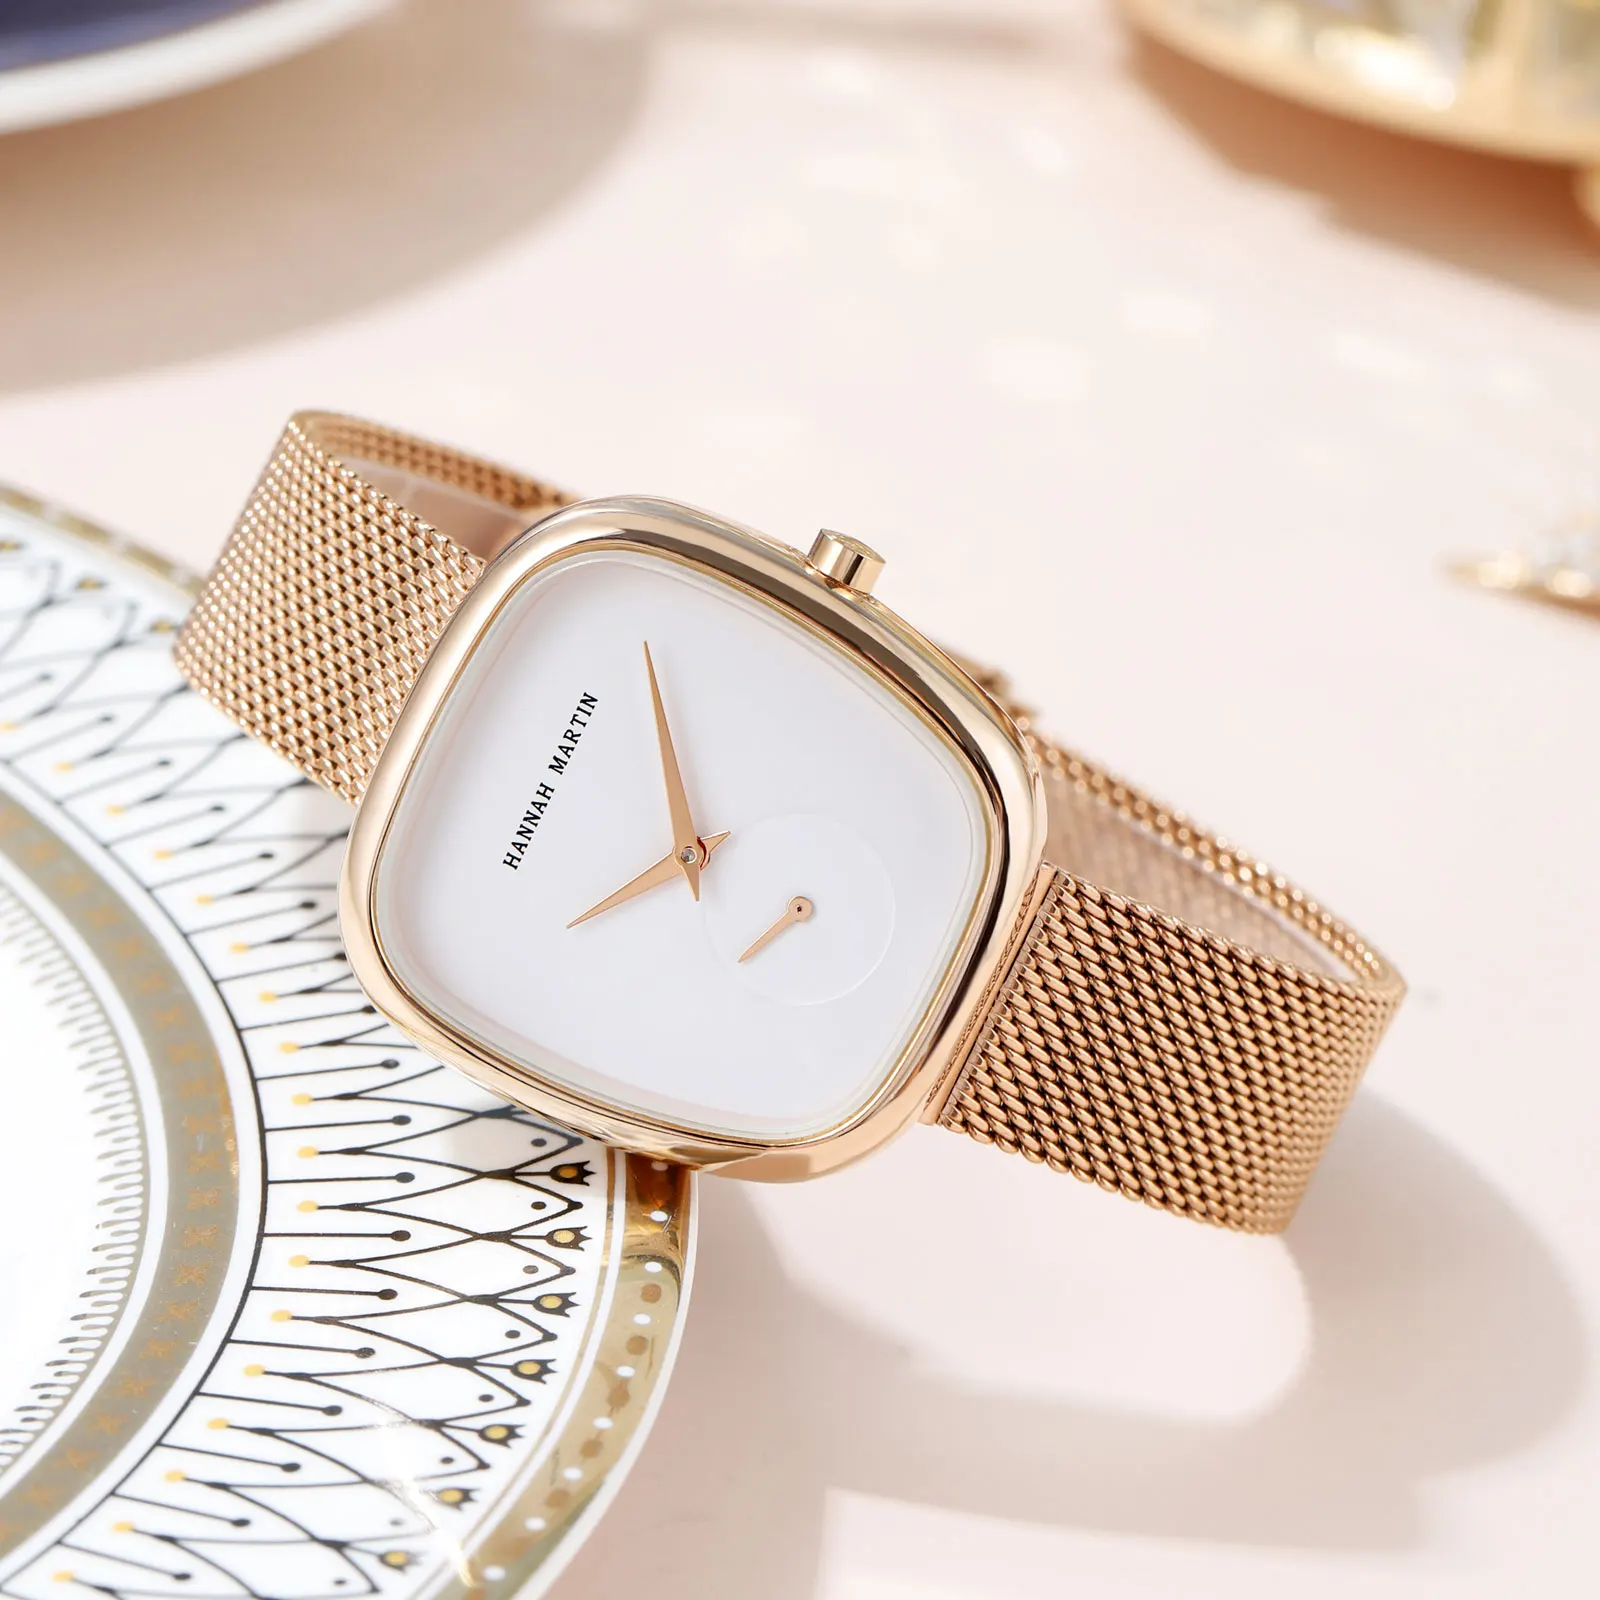 An Elegant Bracelet Wristwatch For Women sitting on a plate.